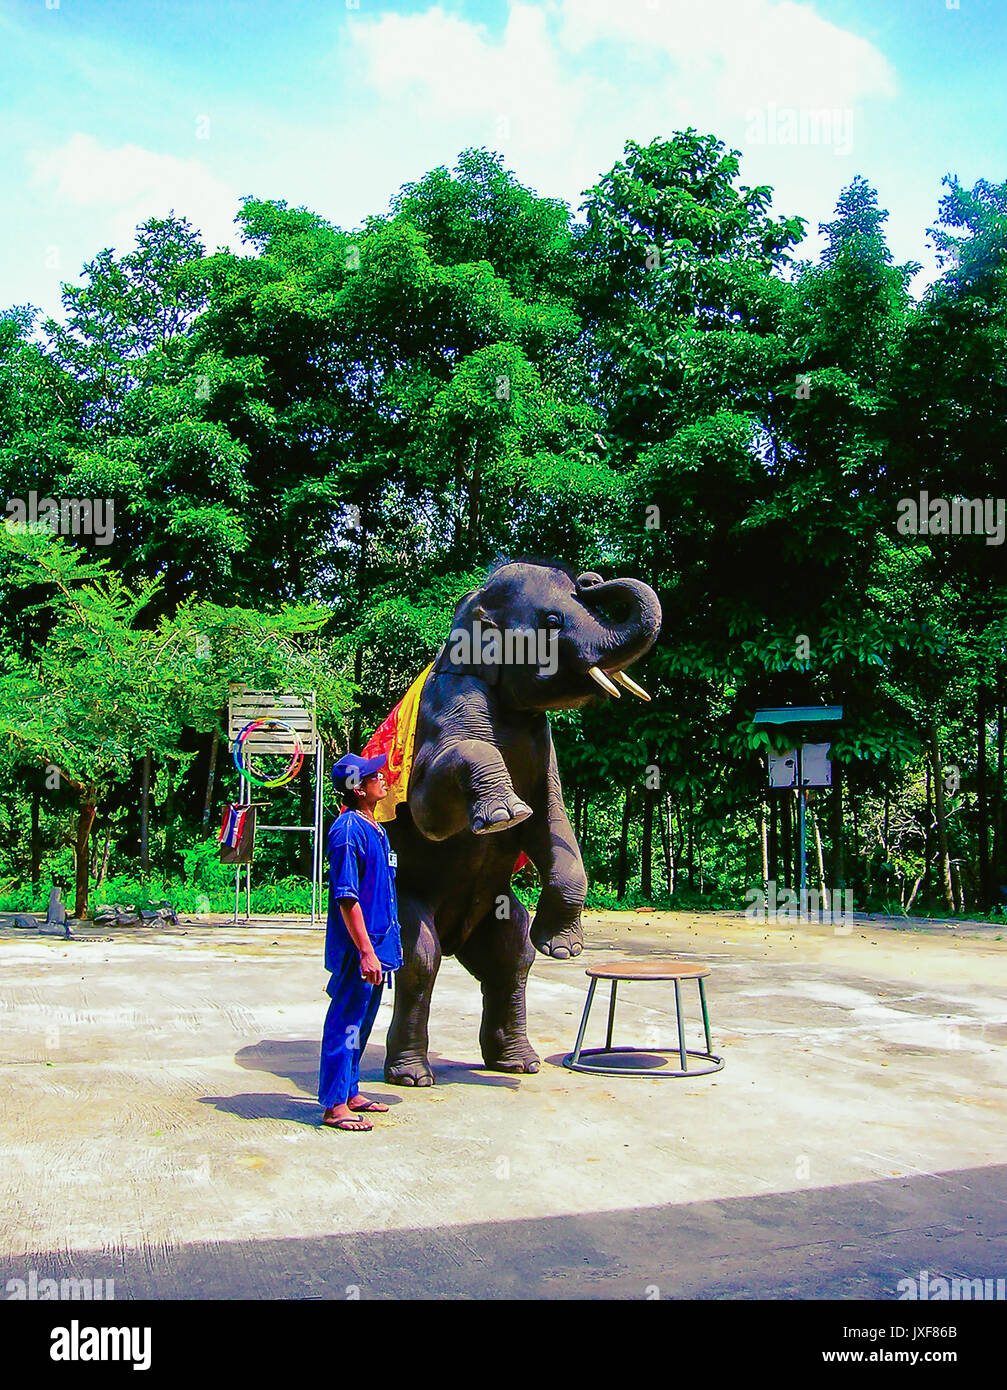 Koh Samui, Tailandia - Junio 21, 2008: el elefante joven haciendo trucos Foto de stock